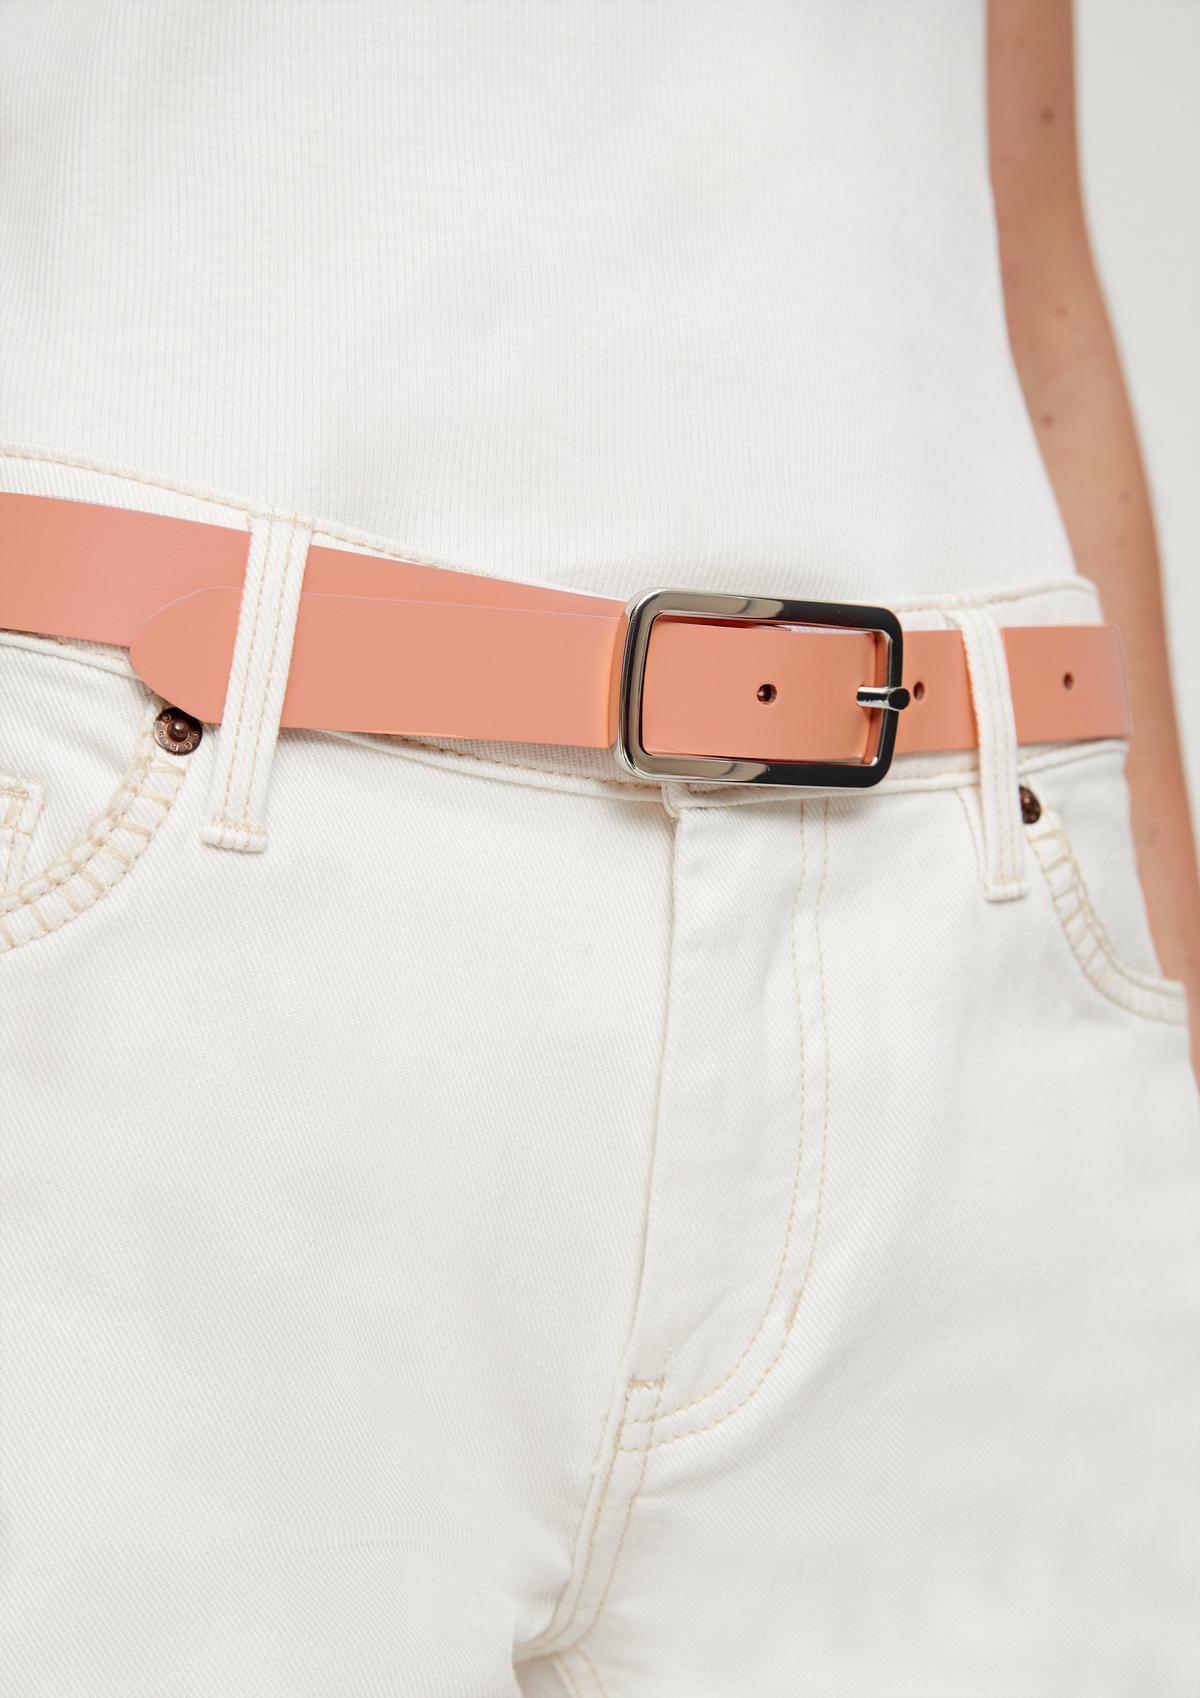 s.Oliver Genuine leather cinch belt